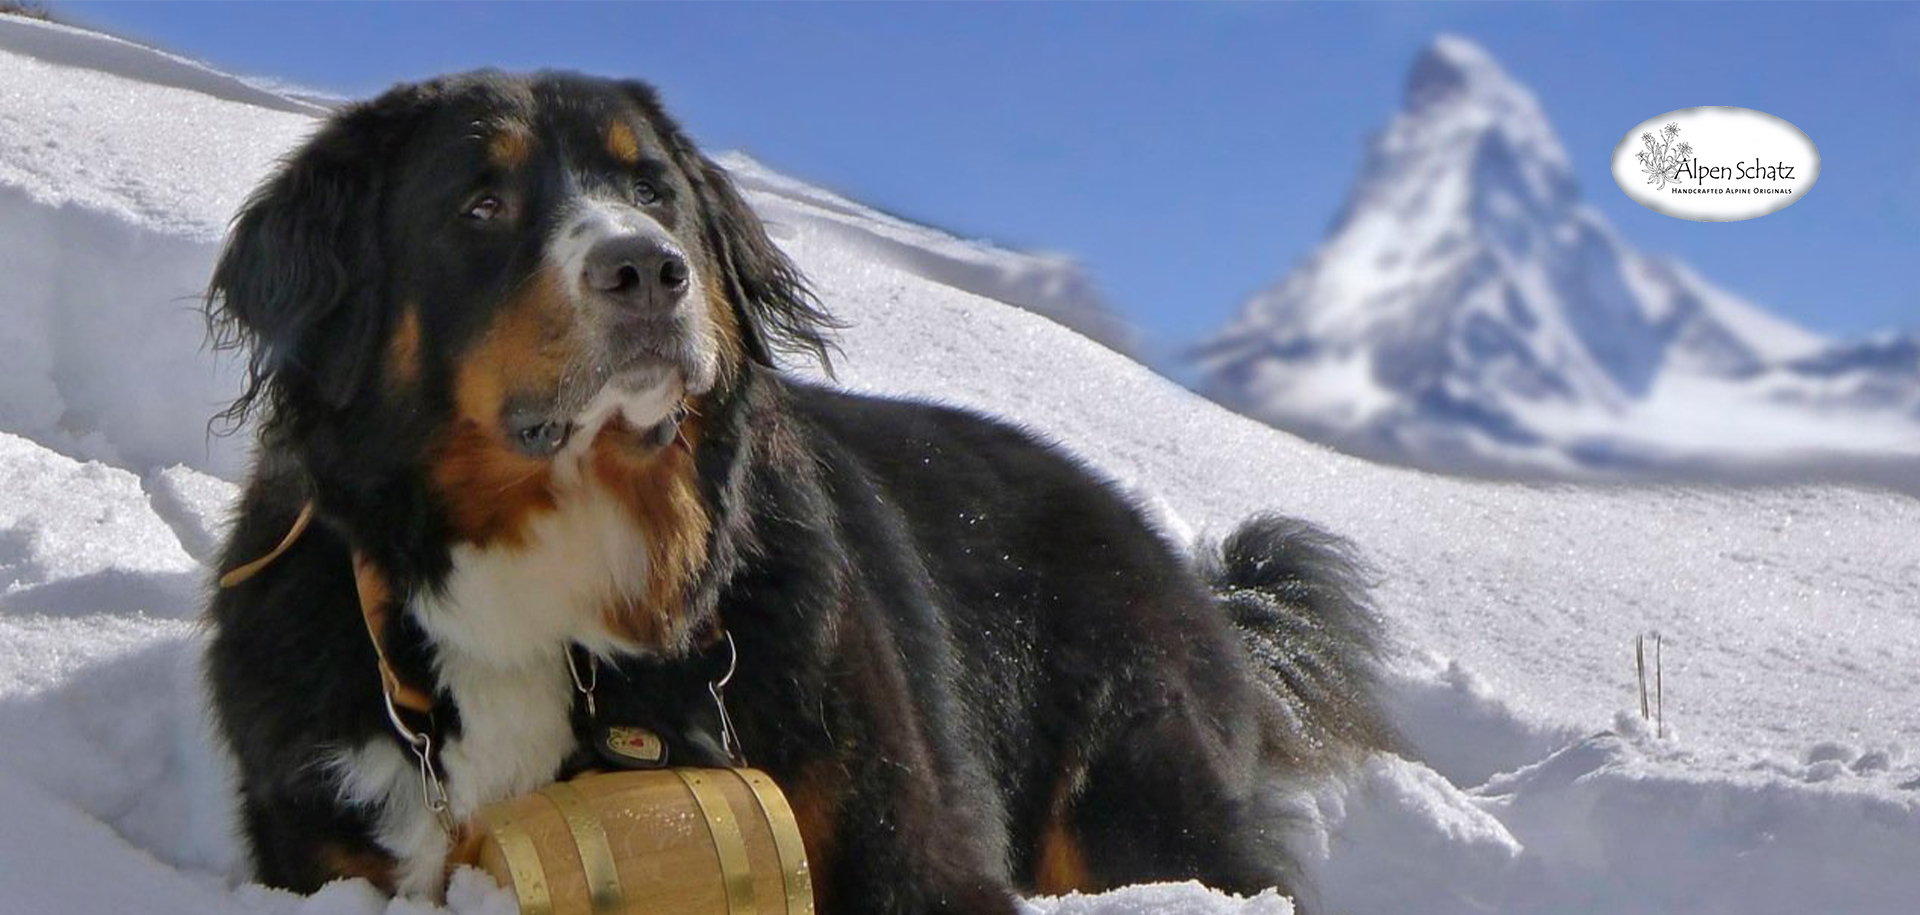 1 1/4 Medium Edelweiss Swiss Dog Collar – Alpen Schatz